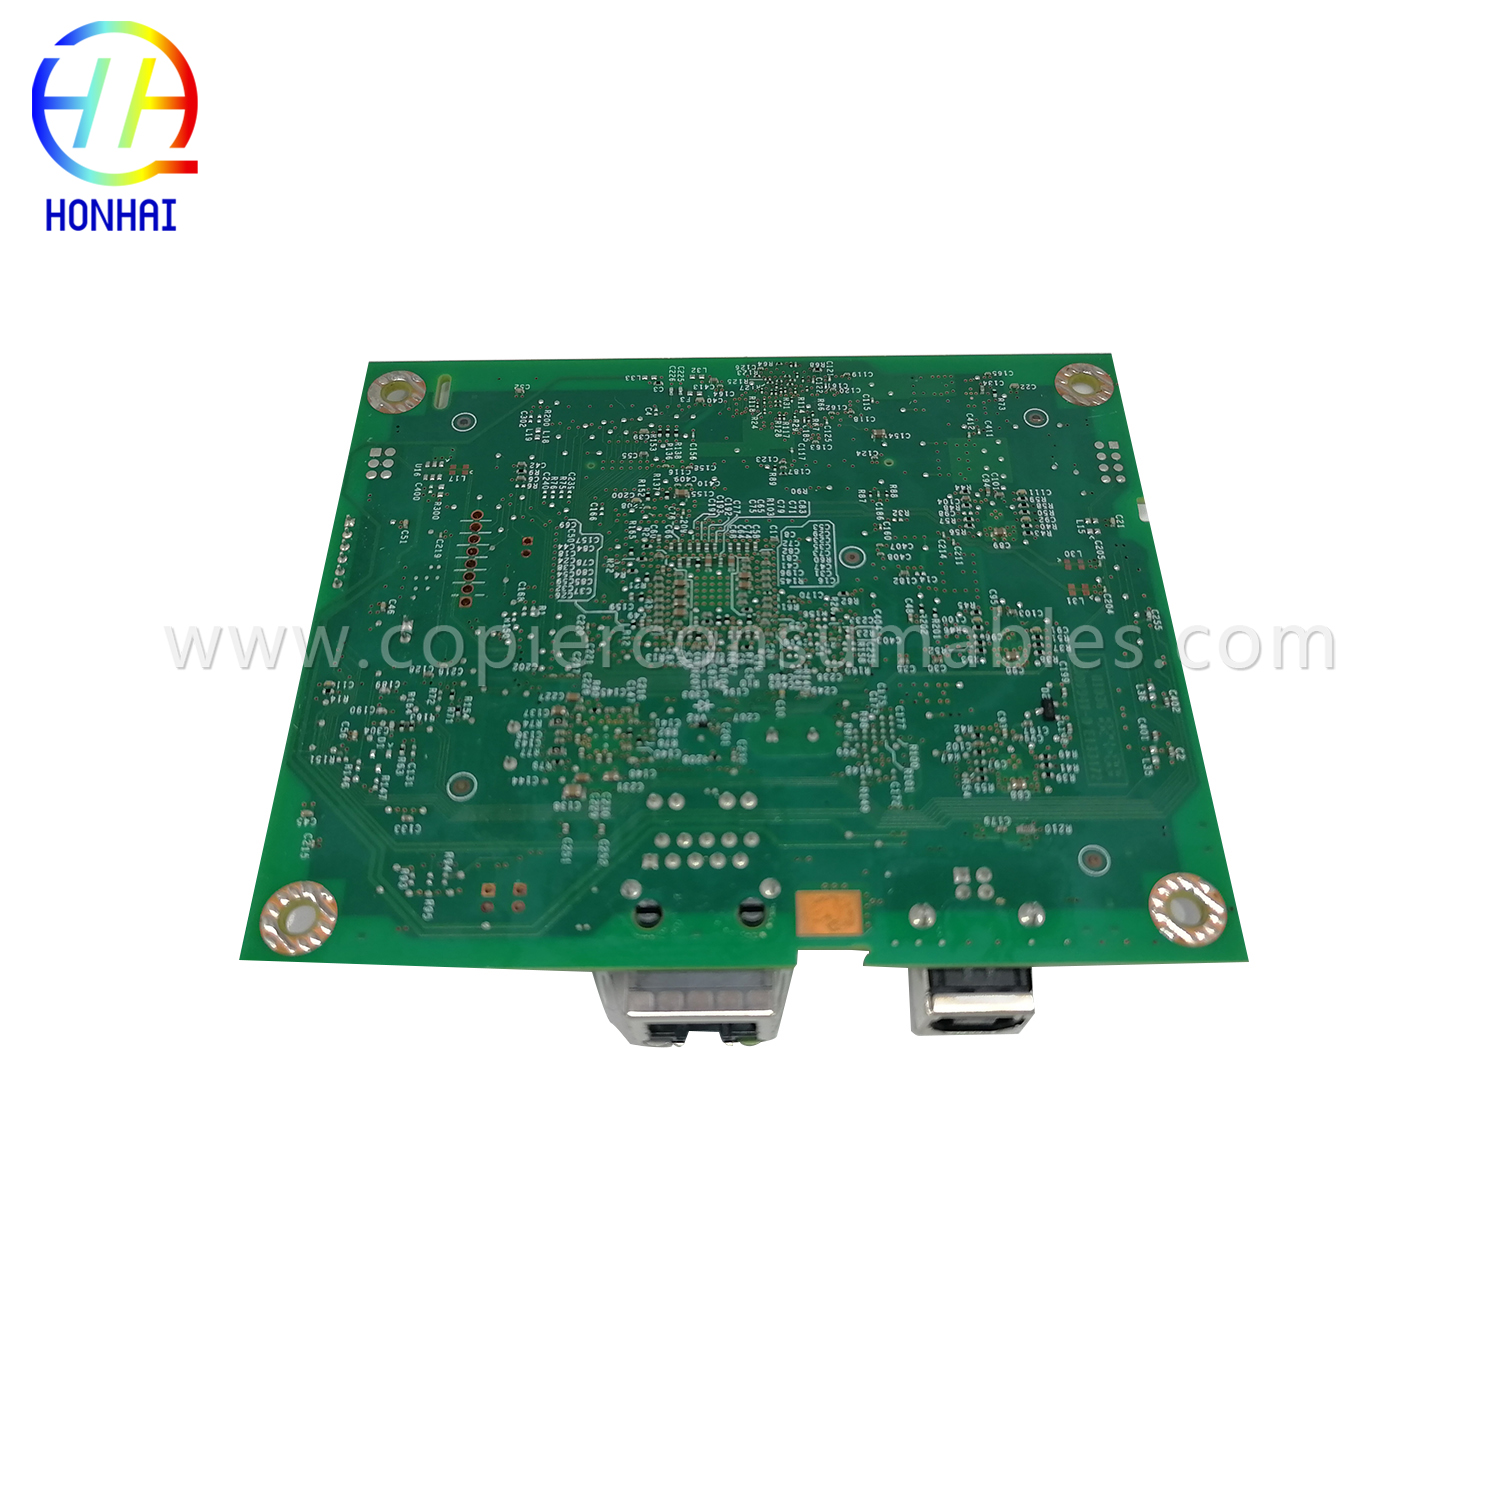 Formatter Board for HP CF149-60001 LaserJet Pro 400 M401(5) 拷贝